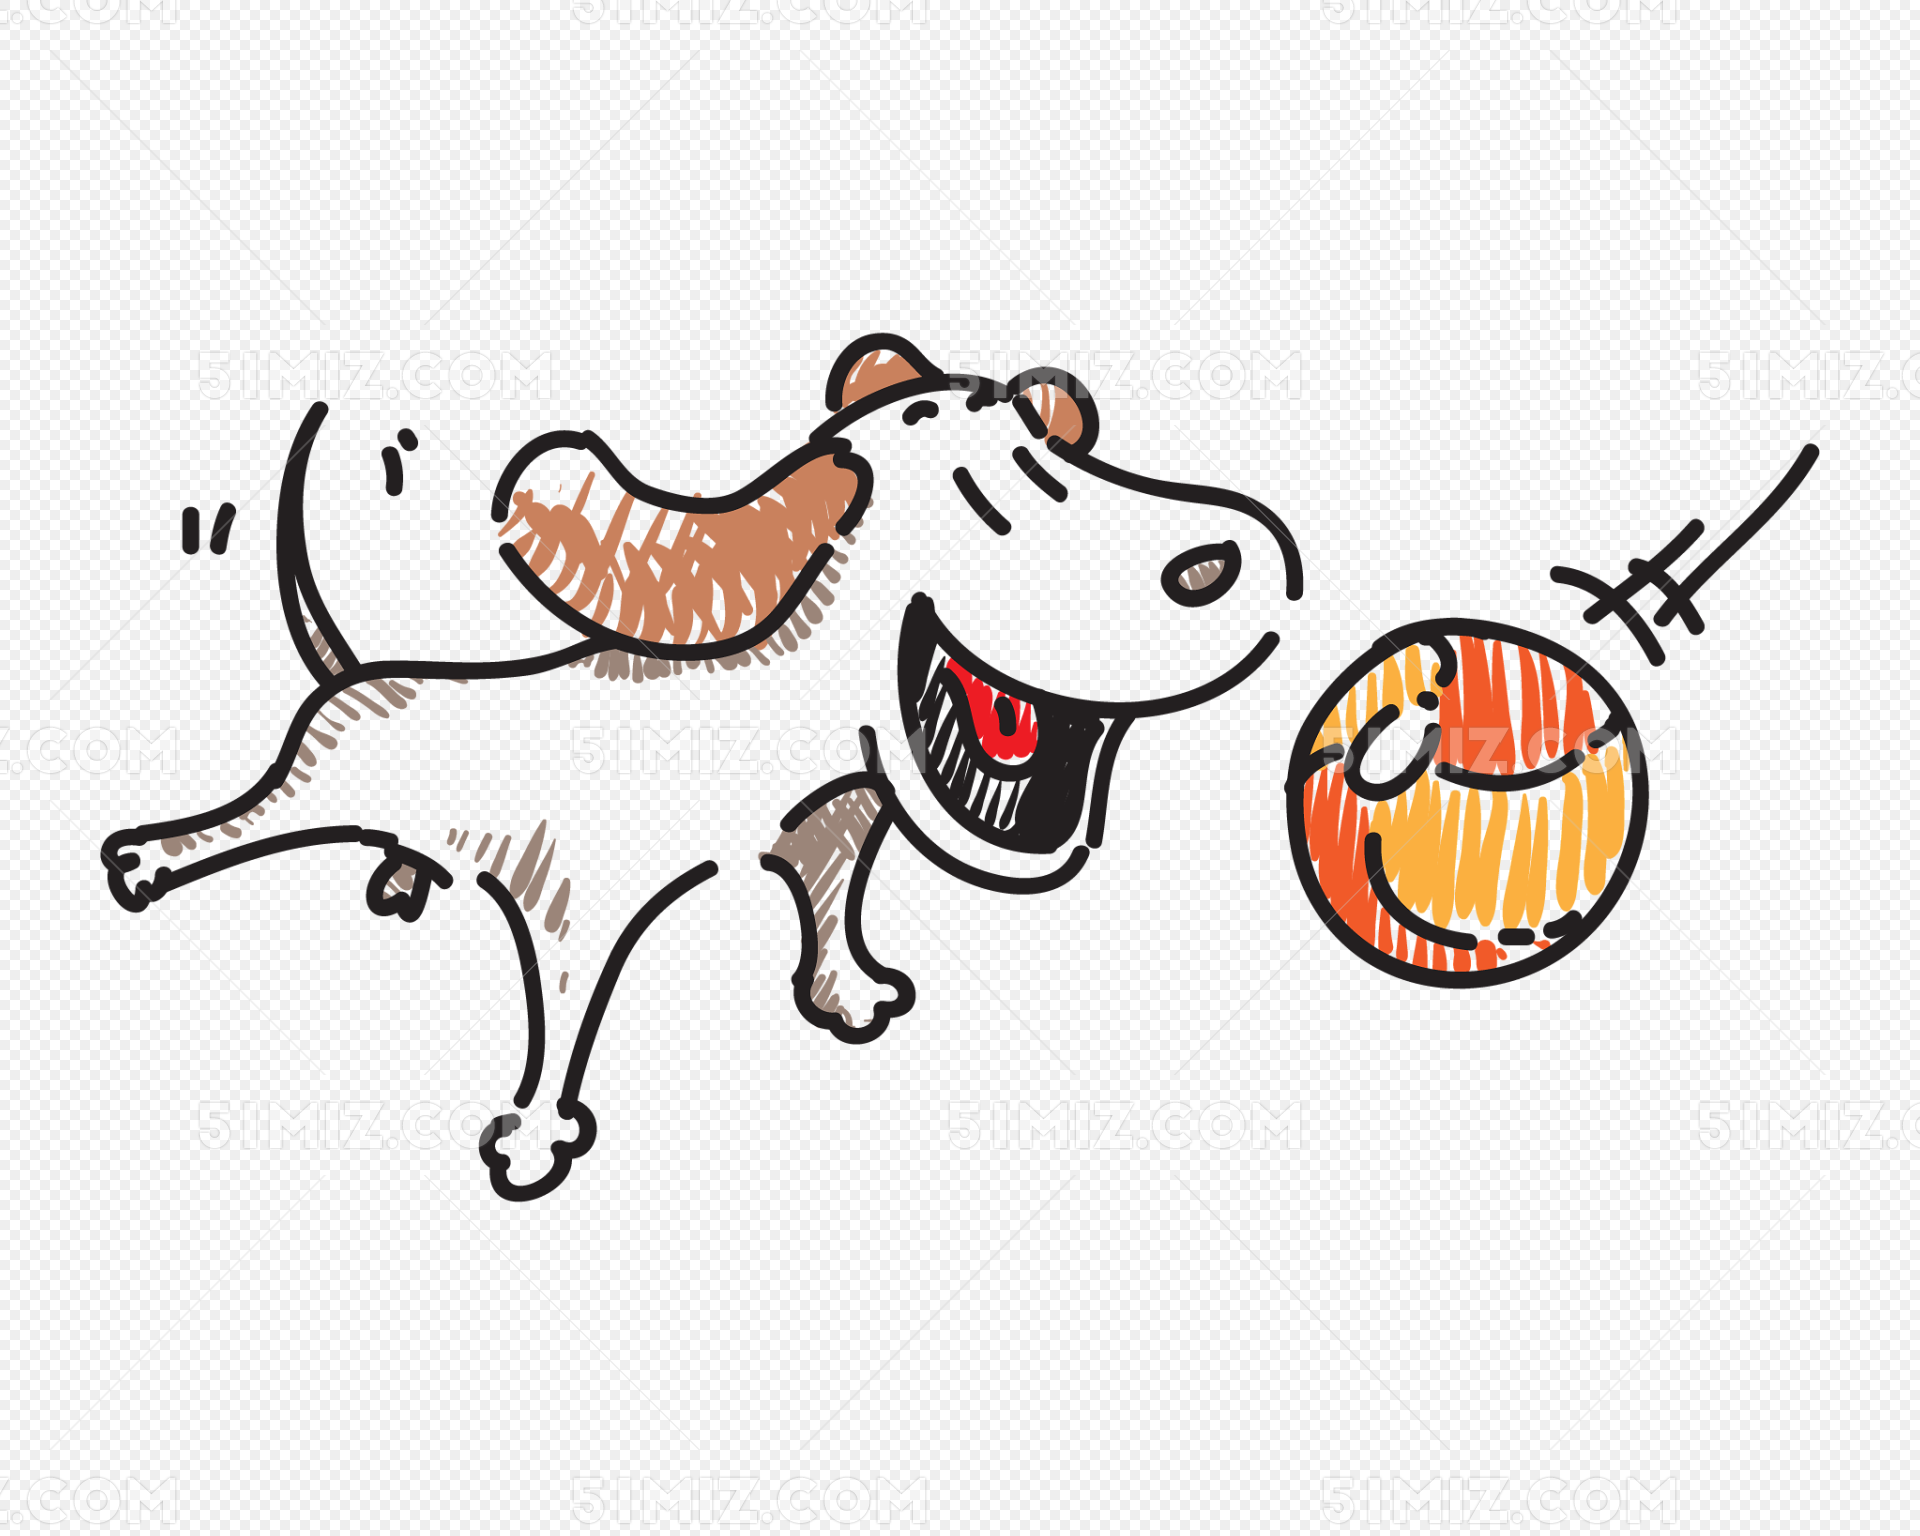 可愛卡通狗狗PSD圖案素材免費下載 - 尺寸2000 × 2000px - 圖形ID401406163 - Lovepik